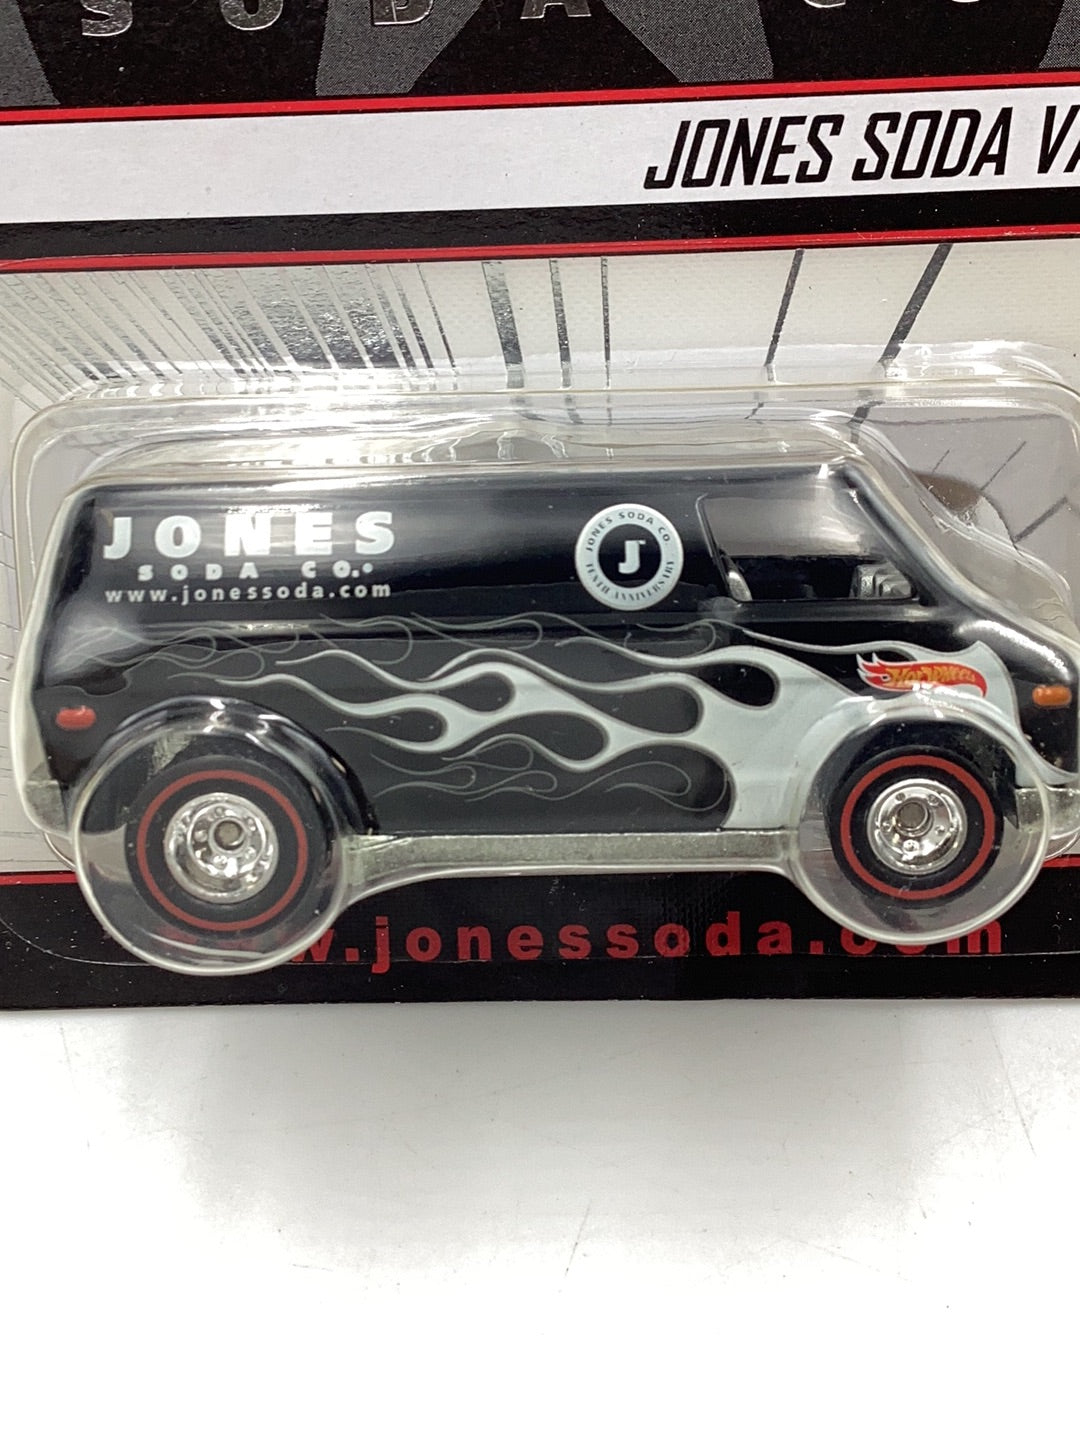 Hot wheels collectors Jones Soda Van 5321/13000 with protector